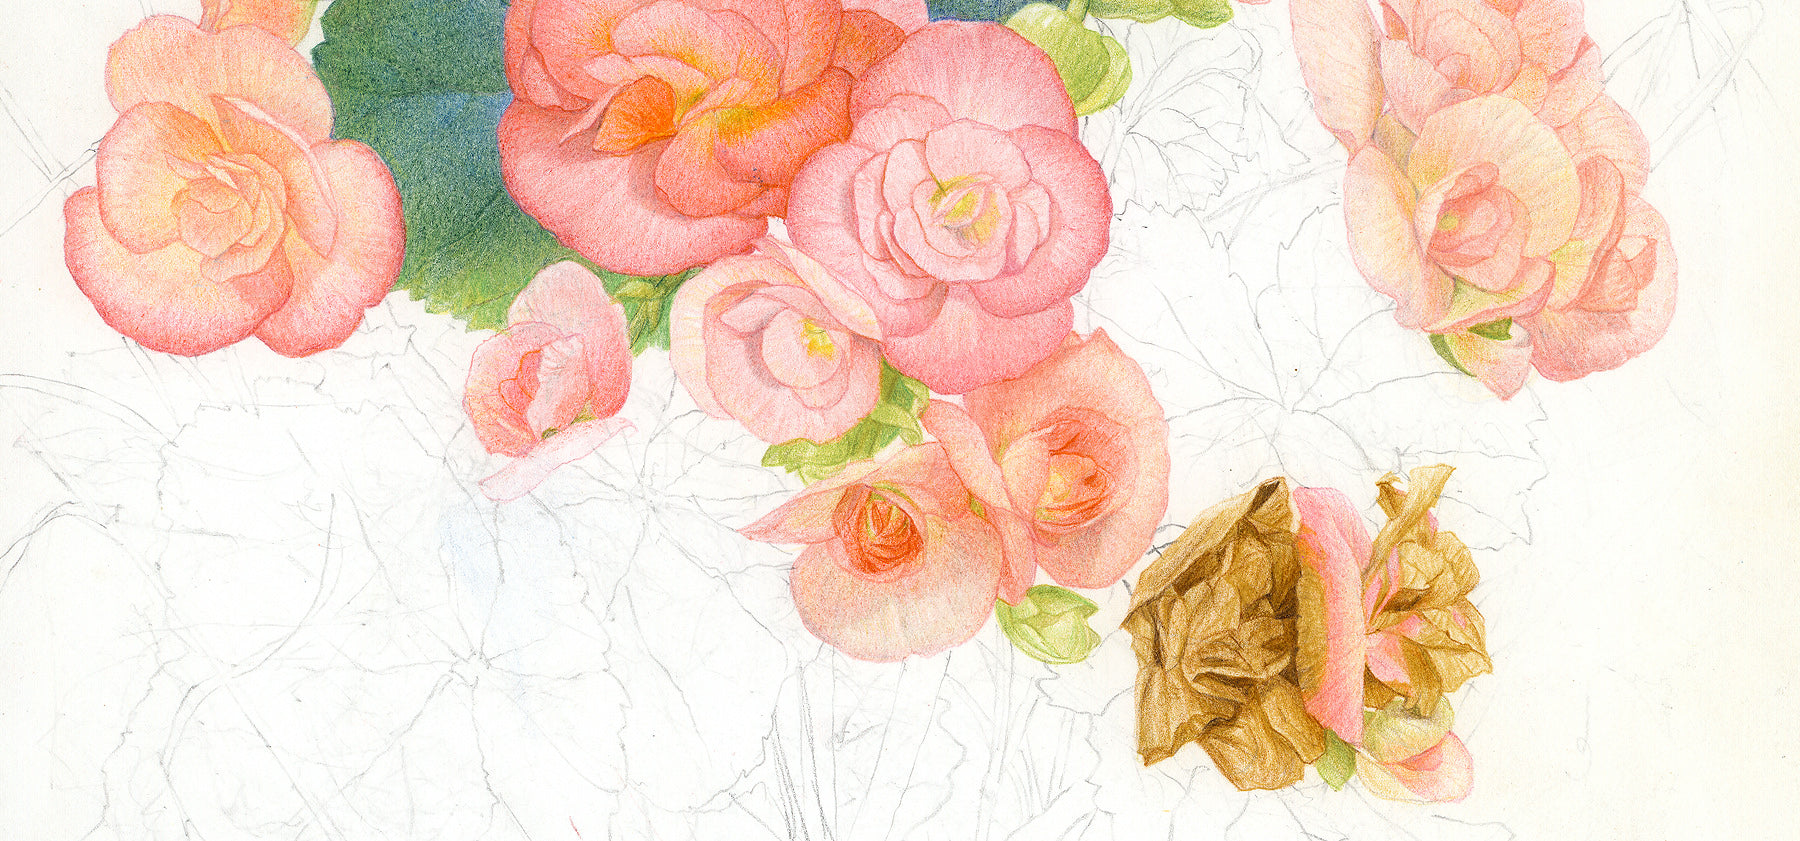 Glen Loates sketch of flowers